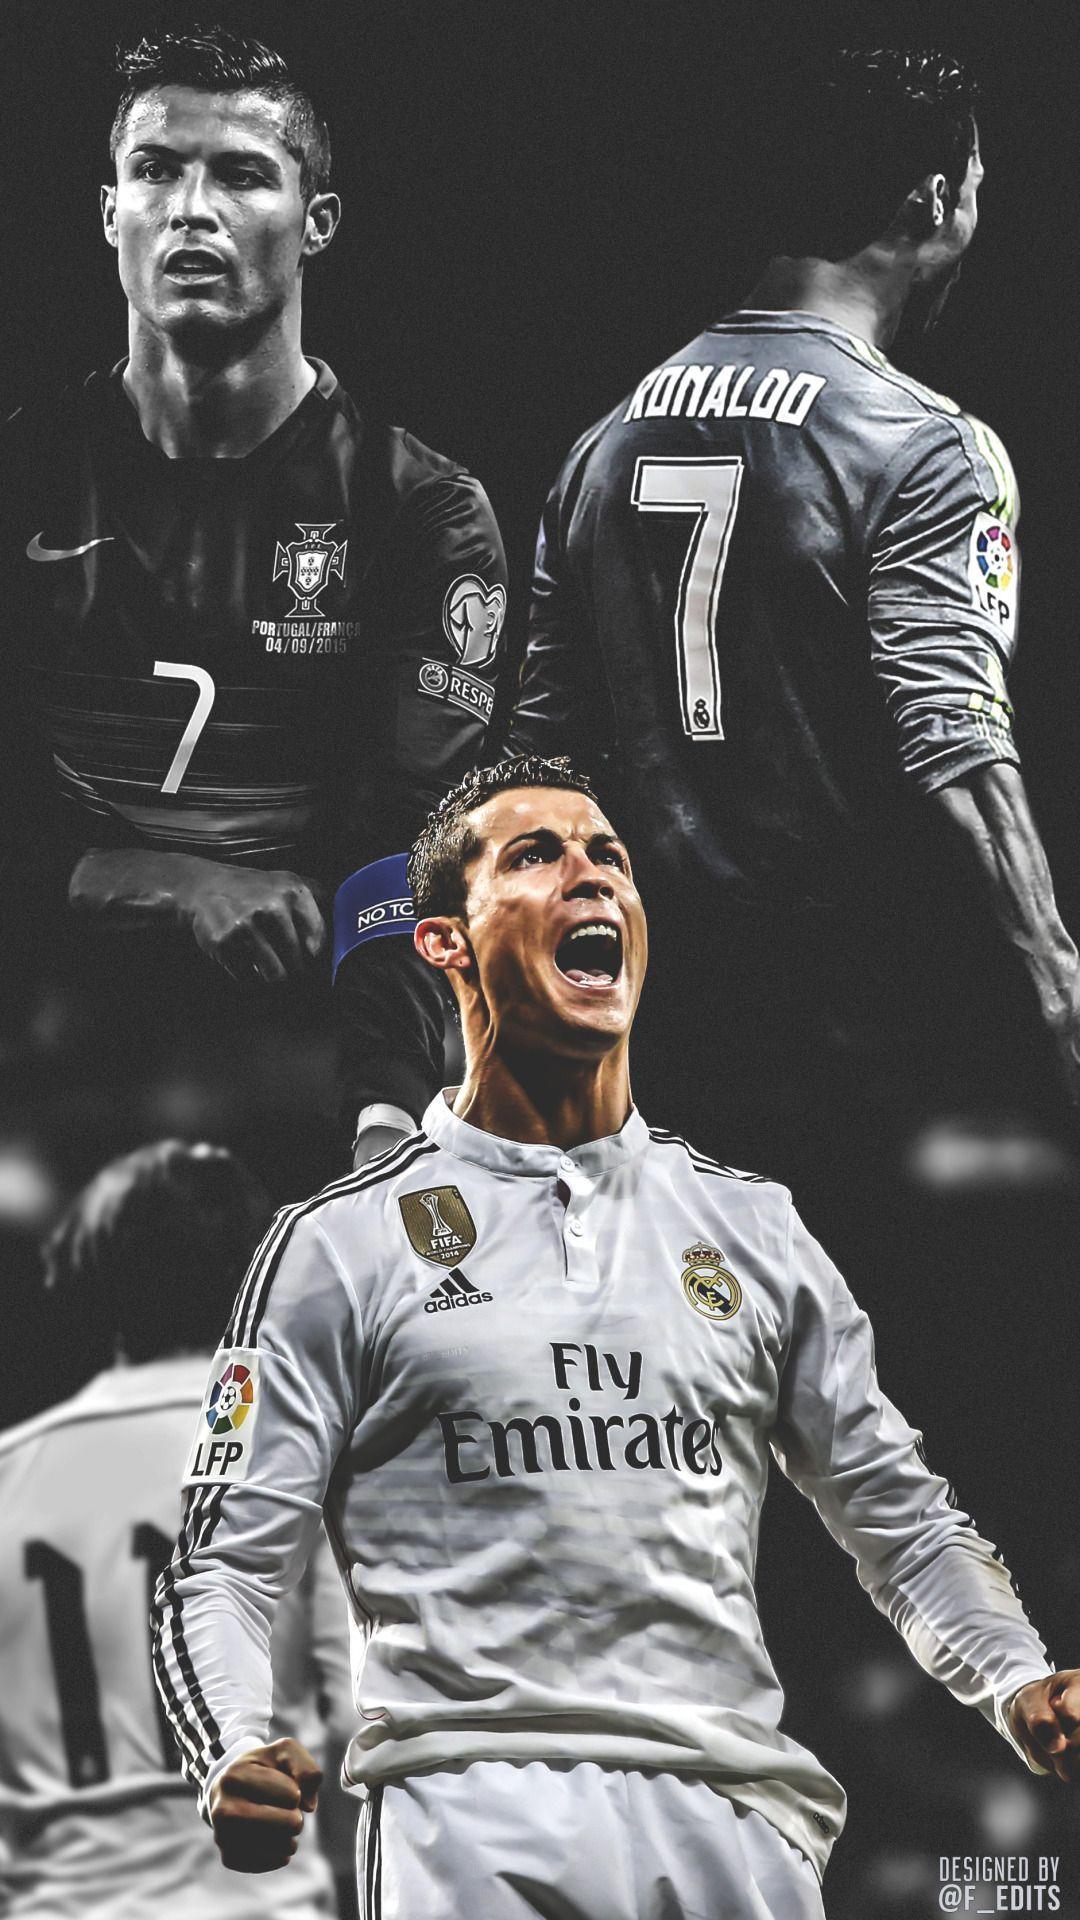 Cristiano Ronaldo wallpaper. Cristiano ronaldo wallpaper, Ronaldo wallpaper, Cristiano ronaldo